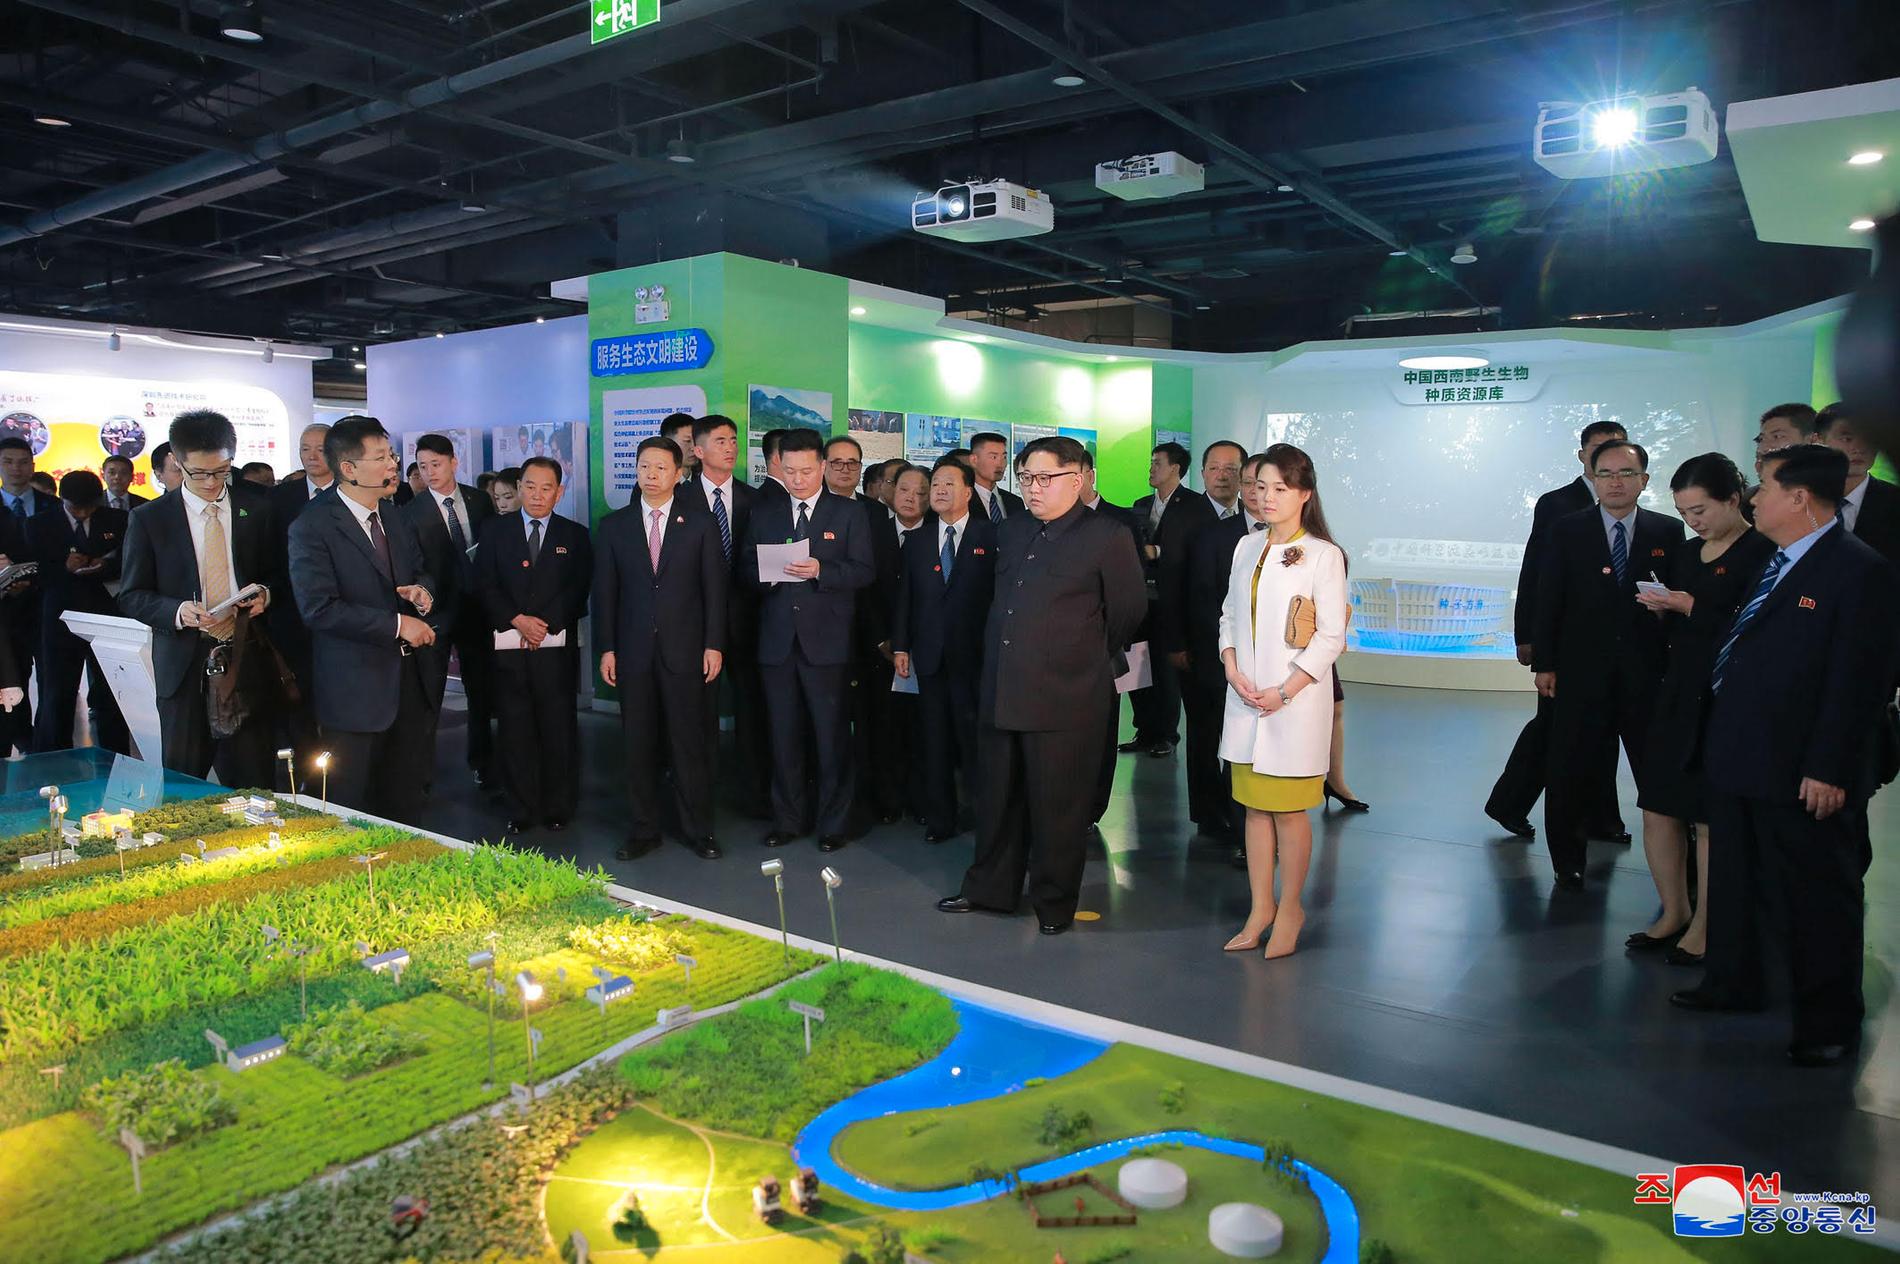 Kim och hans fru besökte Kinesiska vetenskapsakademin under sitt besök i Peking.